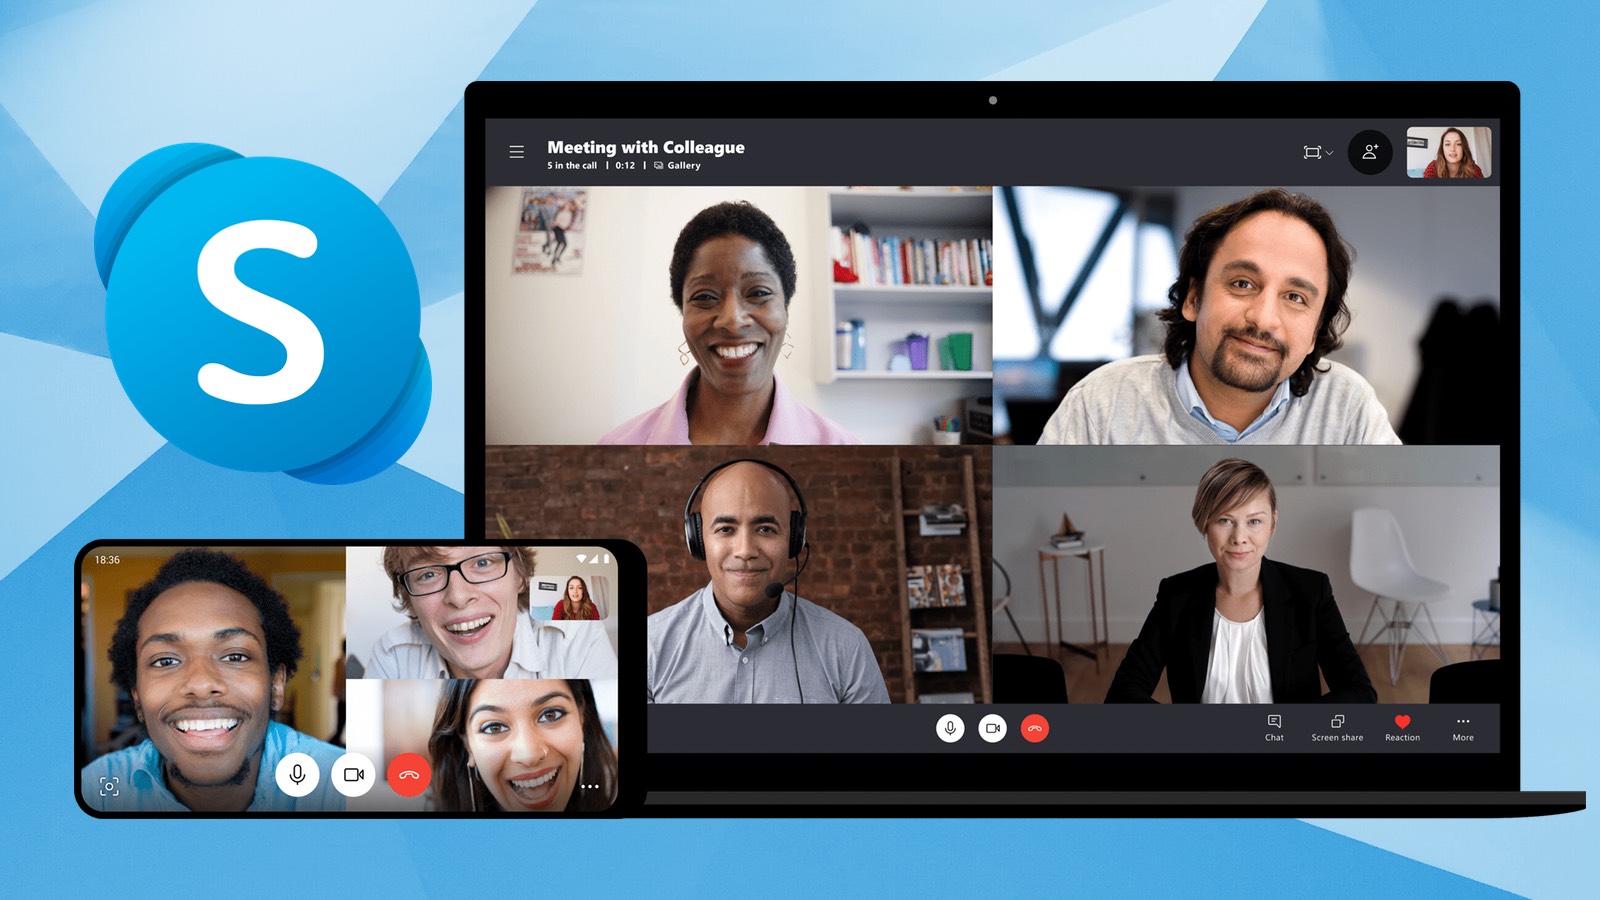 skype video chat on macbook